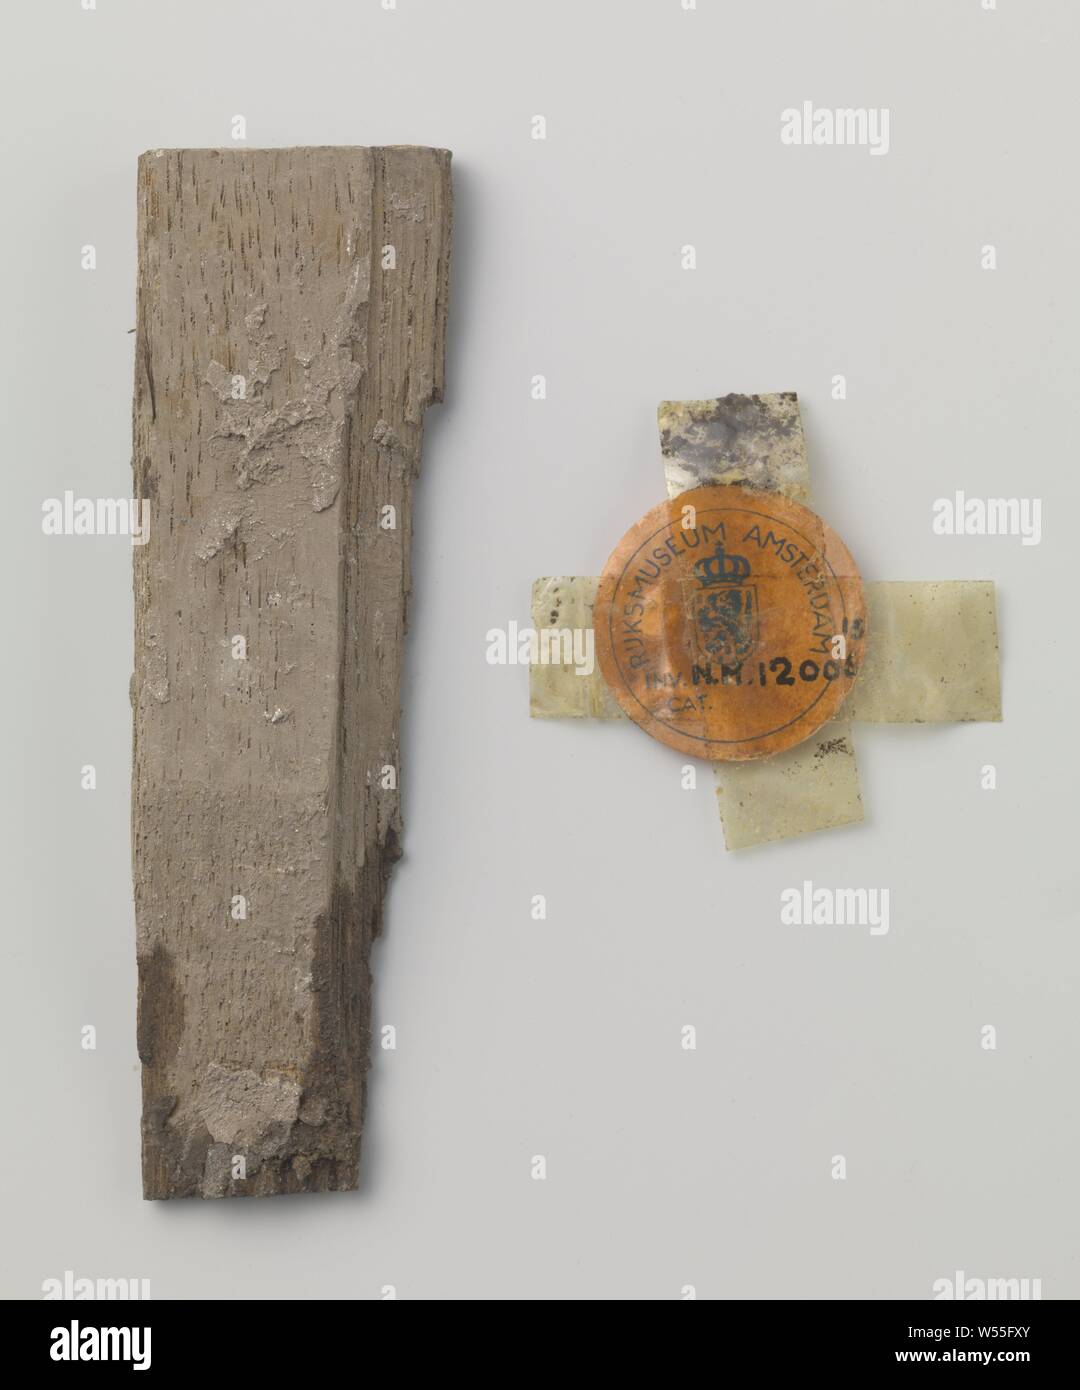 Fragment (avec numéro de l'objet), (peut-être) appartenant à le retable de Soest, Royaume-Uni des Pays-Bas, Groningen (province), ch. 1475 - c. 1499, bois (matière végétale), h 73,0 cm × 56,7 cm × d w 12,2 cm Banque D'Images